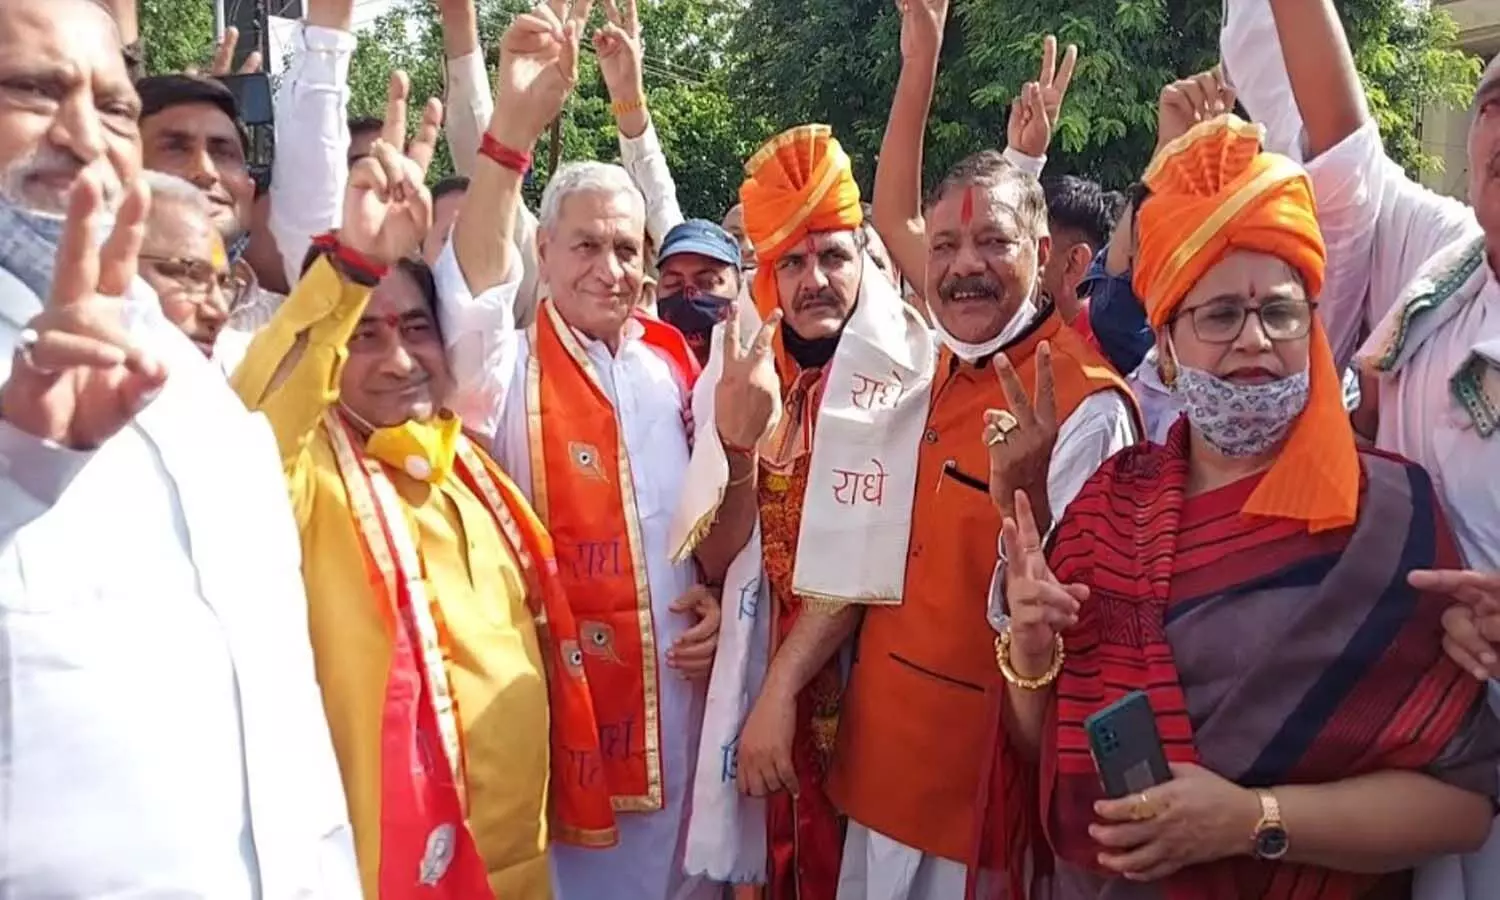 Zila Panchayat Election Result 2021: BSP के सहयोग से BJP को मिली जीत, किशन चौधरी बने मथुरा के जिला पंचायत अध्यक्ष